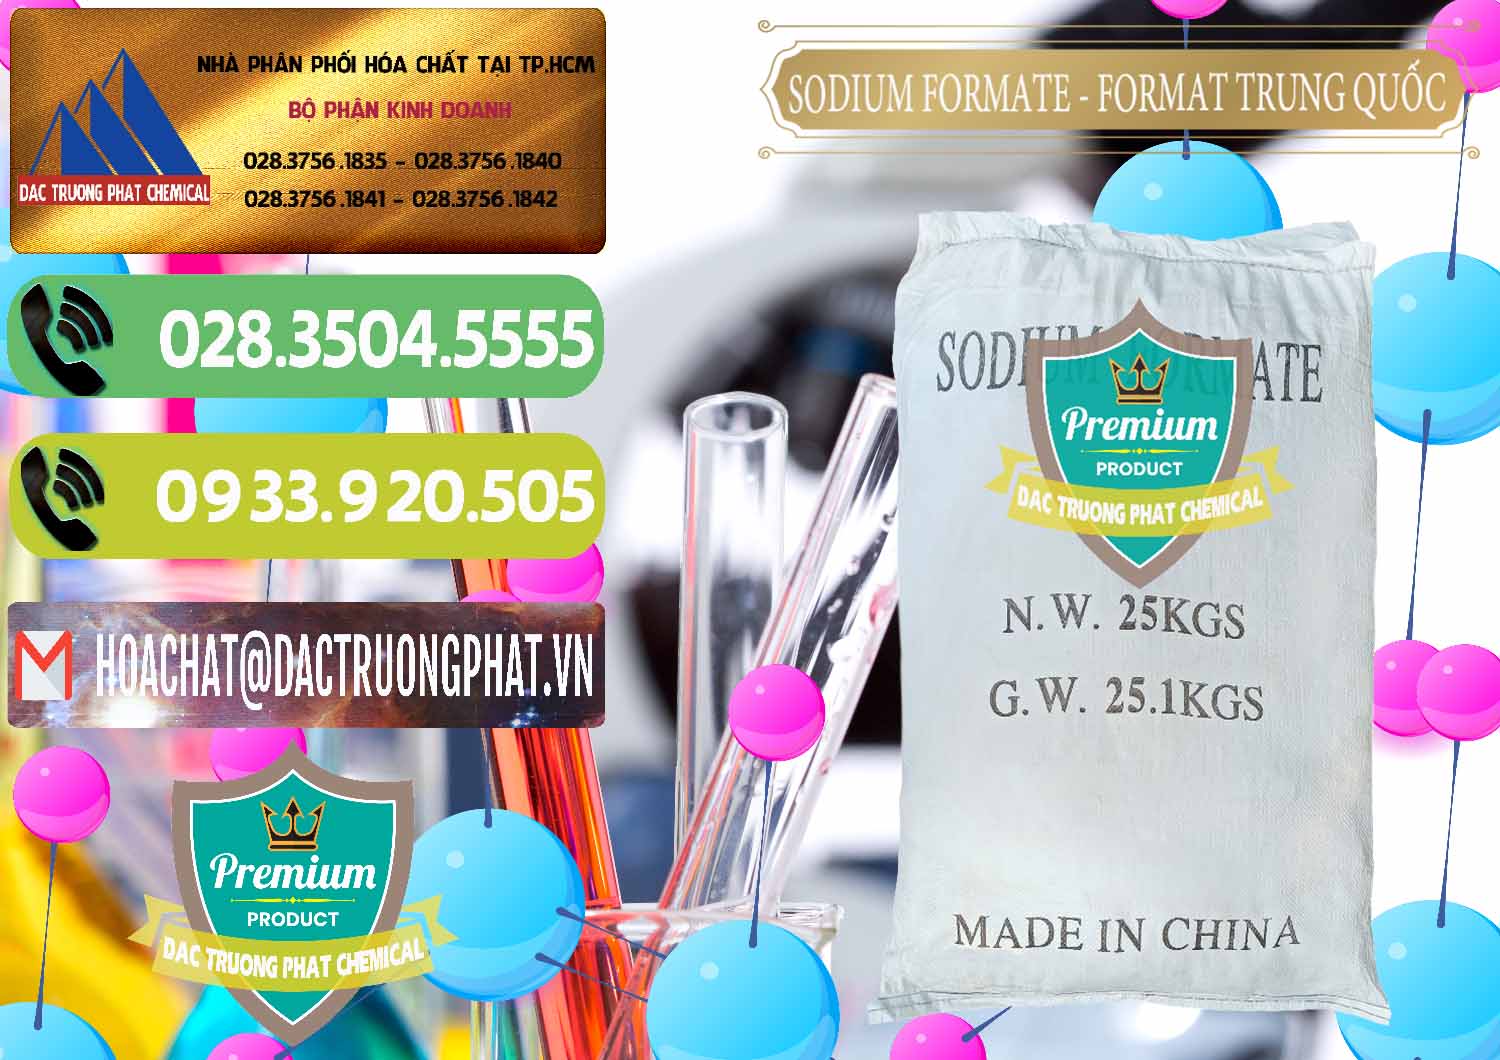 Nhà cung ứng & bán Sodium Formate - Natri Format Trung Quốc China - 0142 - Cty chuyên kinh doanh _ phân phối hóa chất tại TP.HCM - hoachatmientay.vn